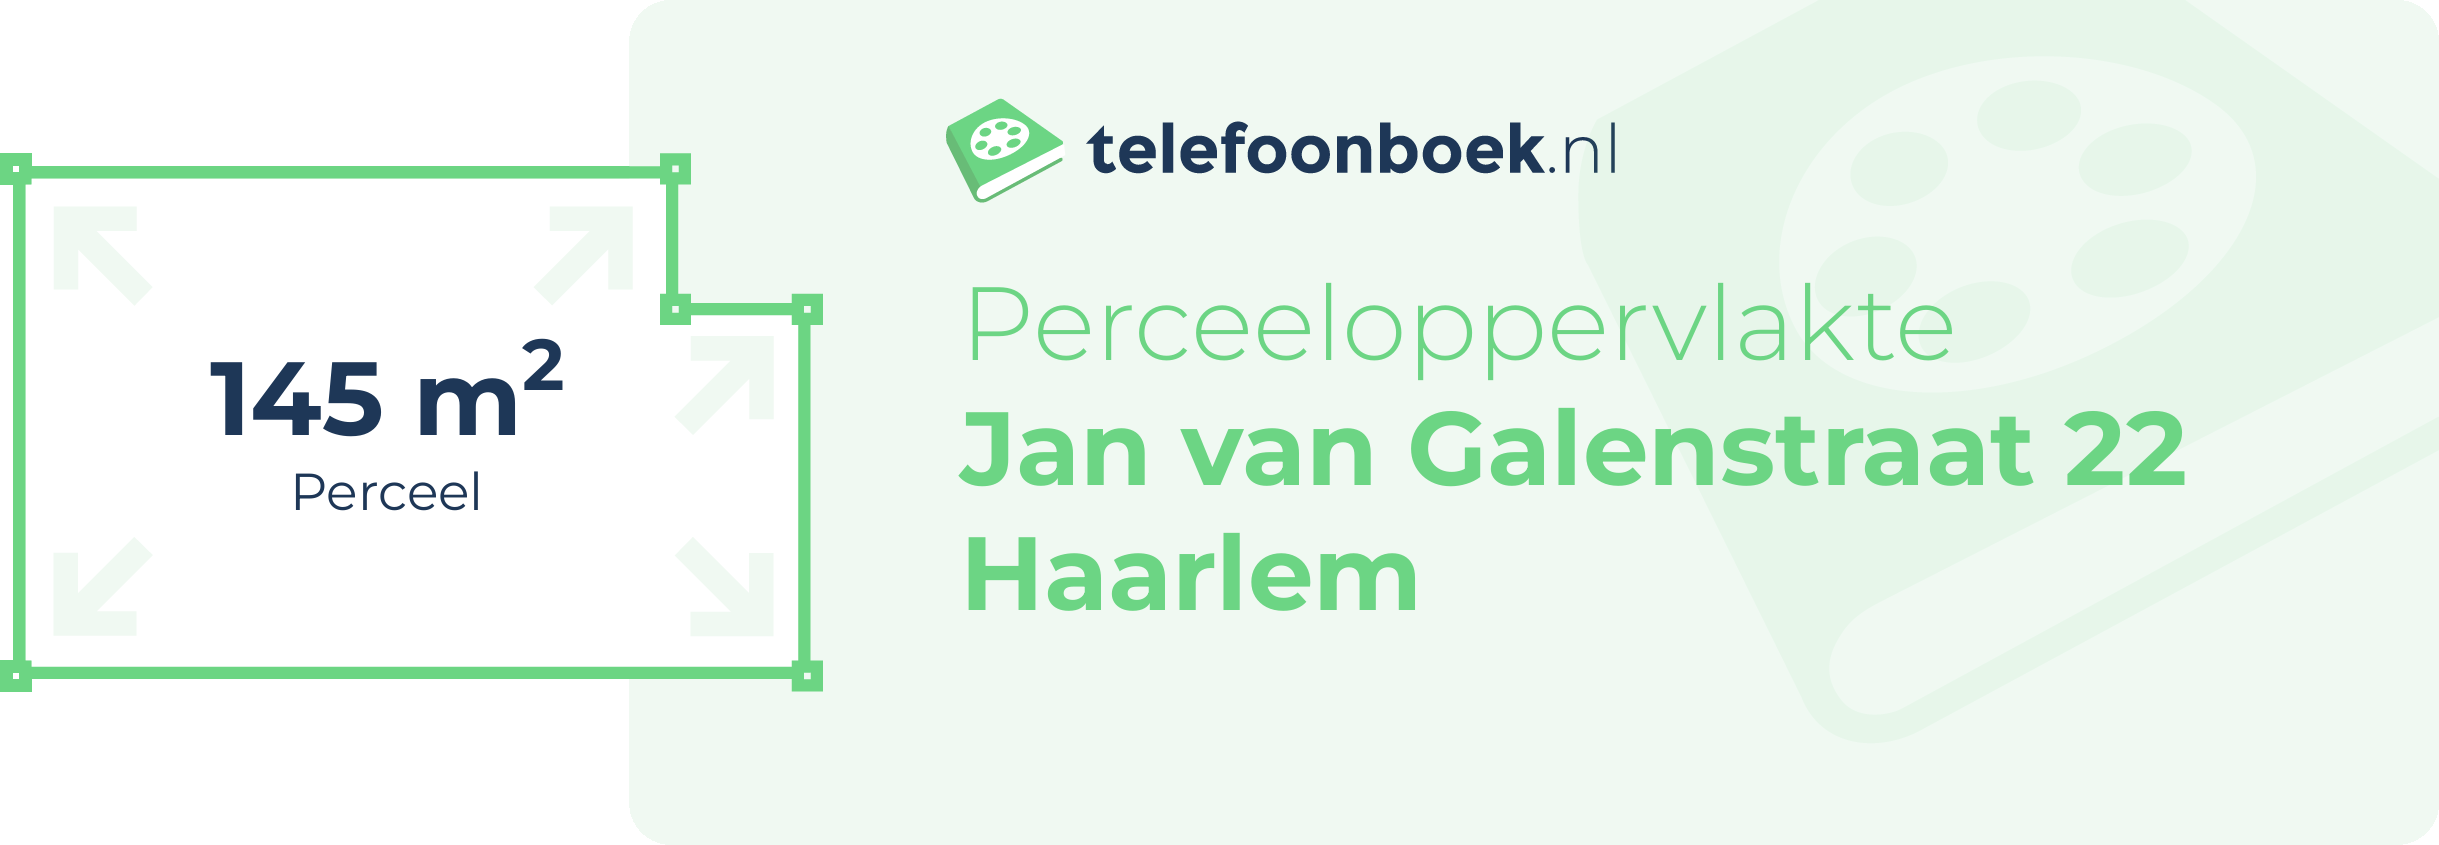 Perceeloppervlakte Jan Van Galenstraat 22 Haarlem